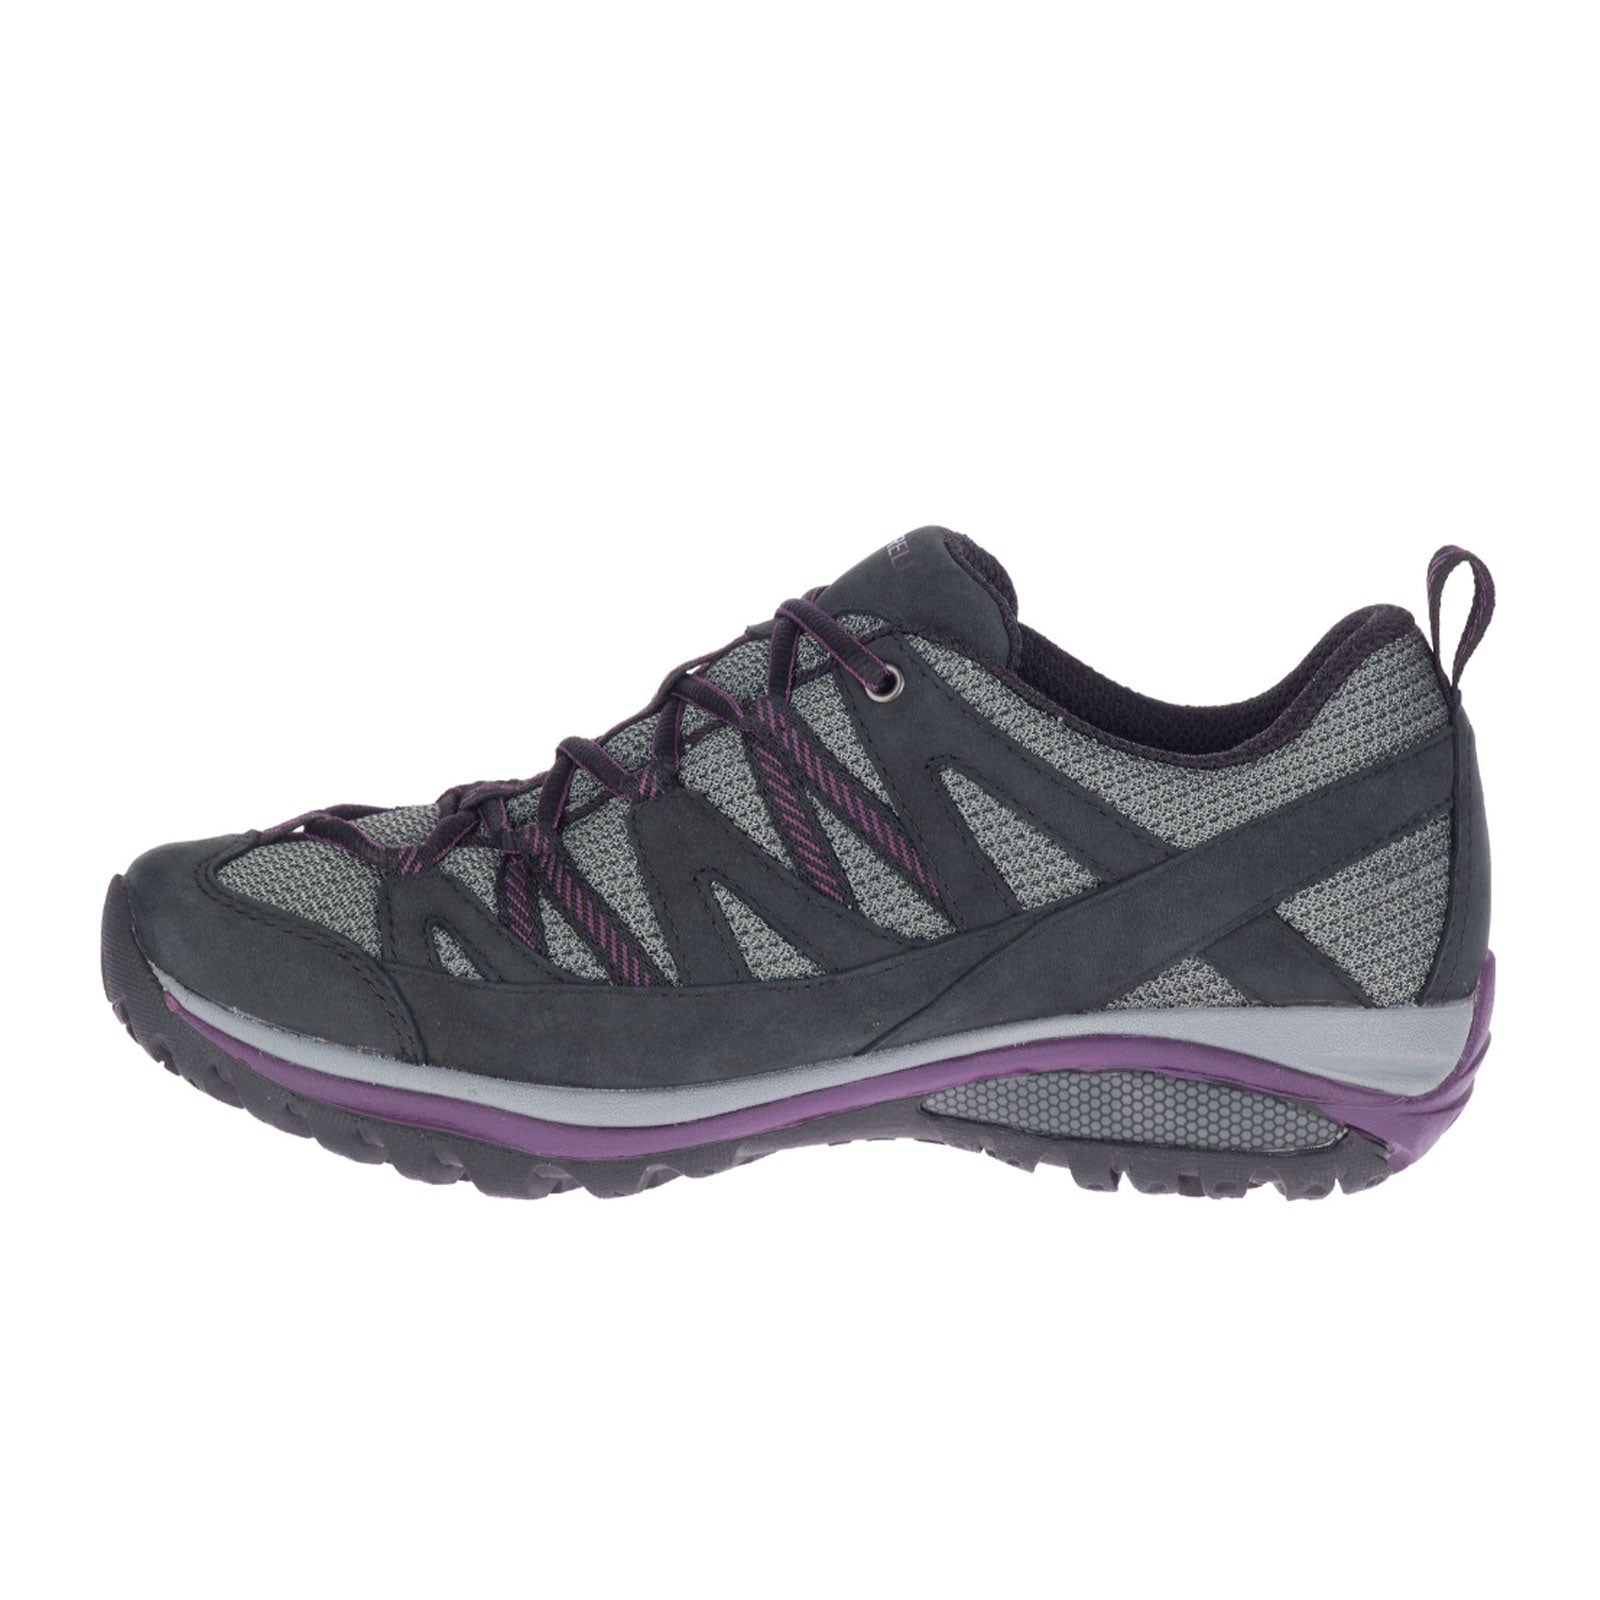 Merrell Siren Sport Waterproof Trail Shoe (Women) - Black/Blackberry - The Heel Shoe Fitters